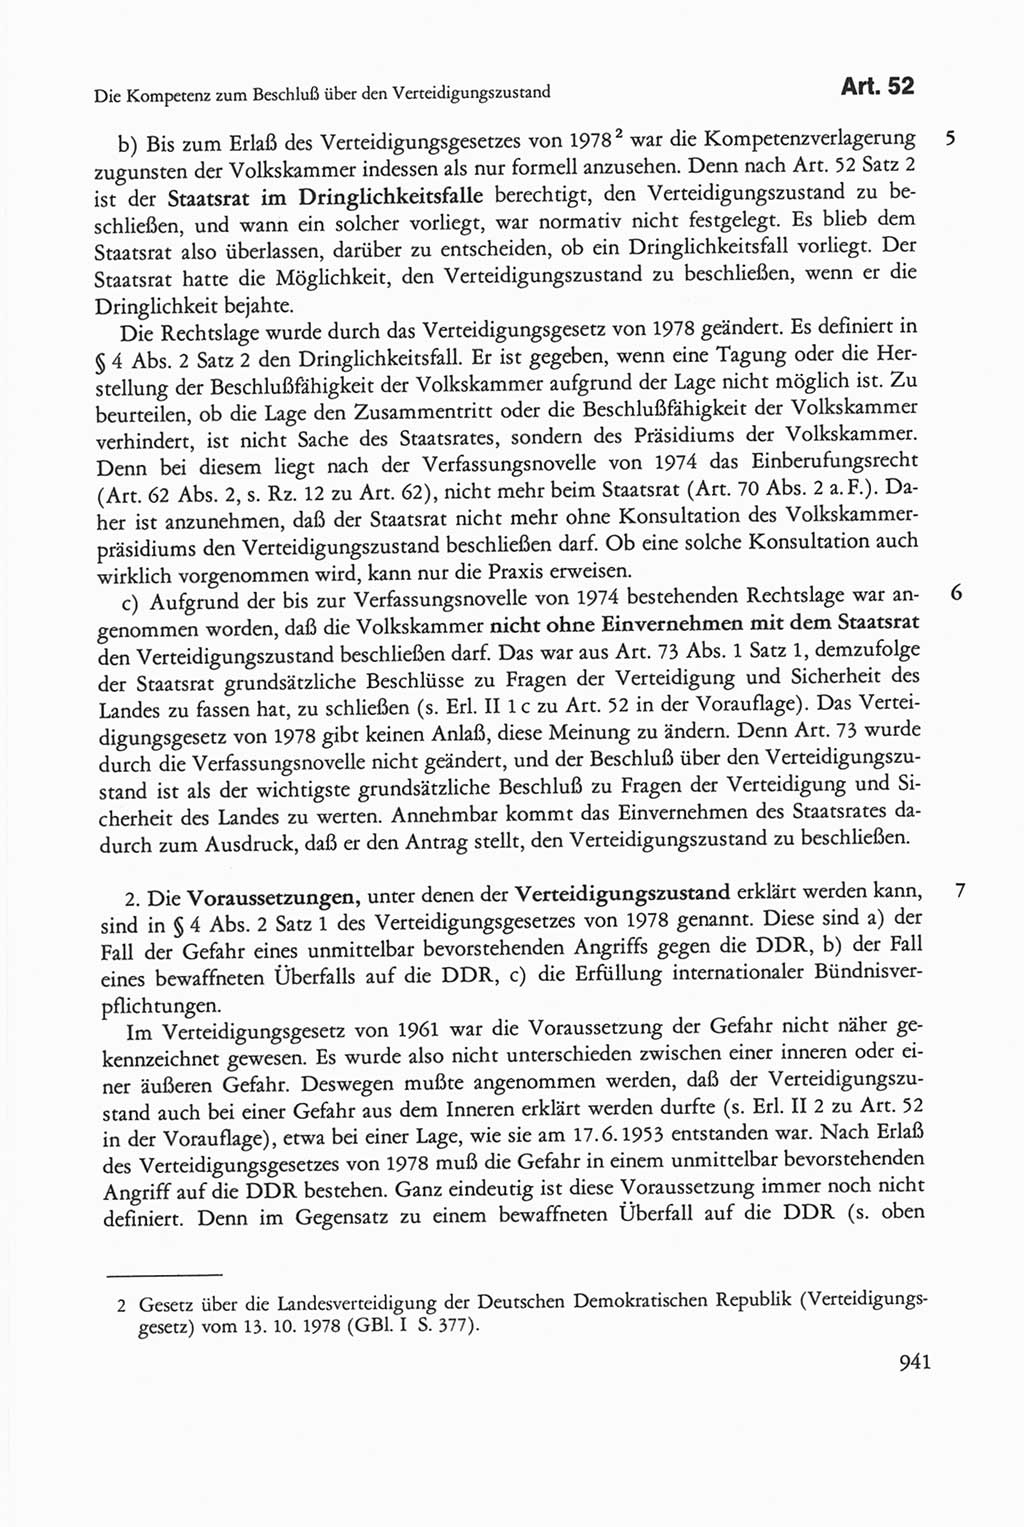 Die sozialistische Verfassung der Deutschen Demokratischen Republik (DDR), Kommentar mit einem Nachtrag 1997, Seite 941 (Soz. Verf. DDR Komm. Nachtr. 1997, S. 941)